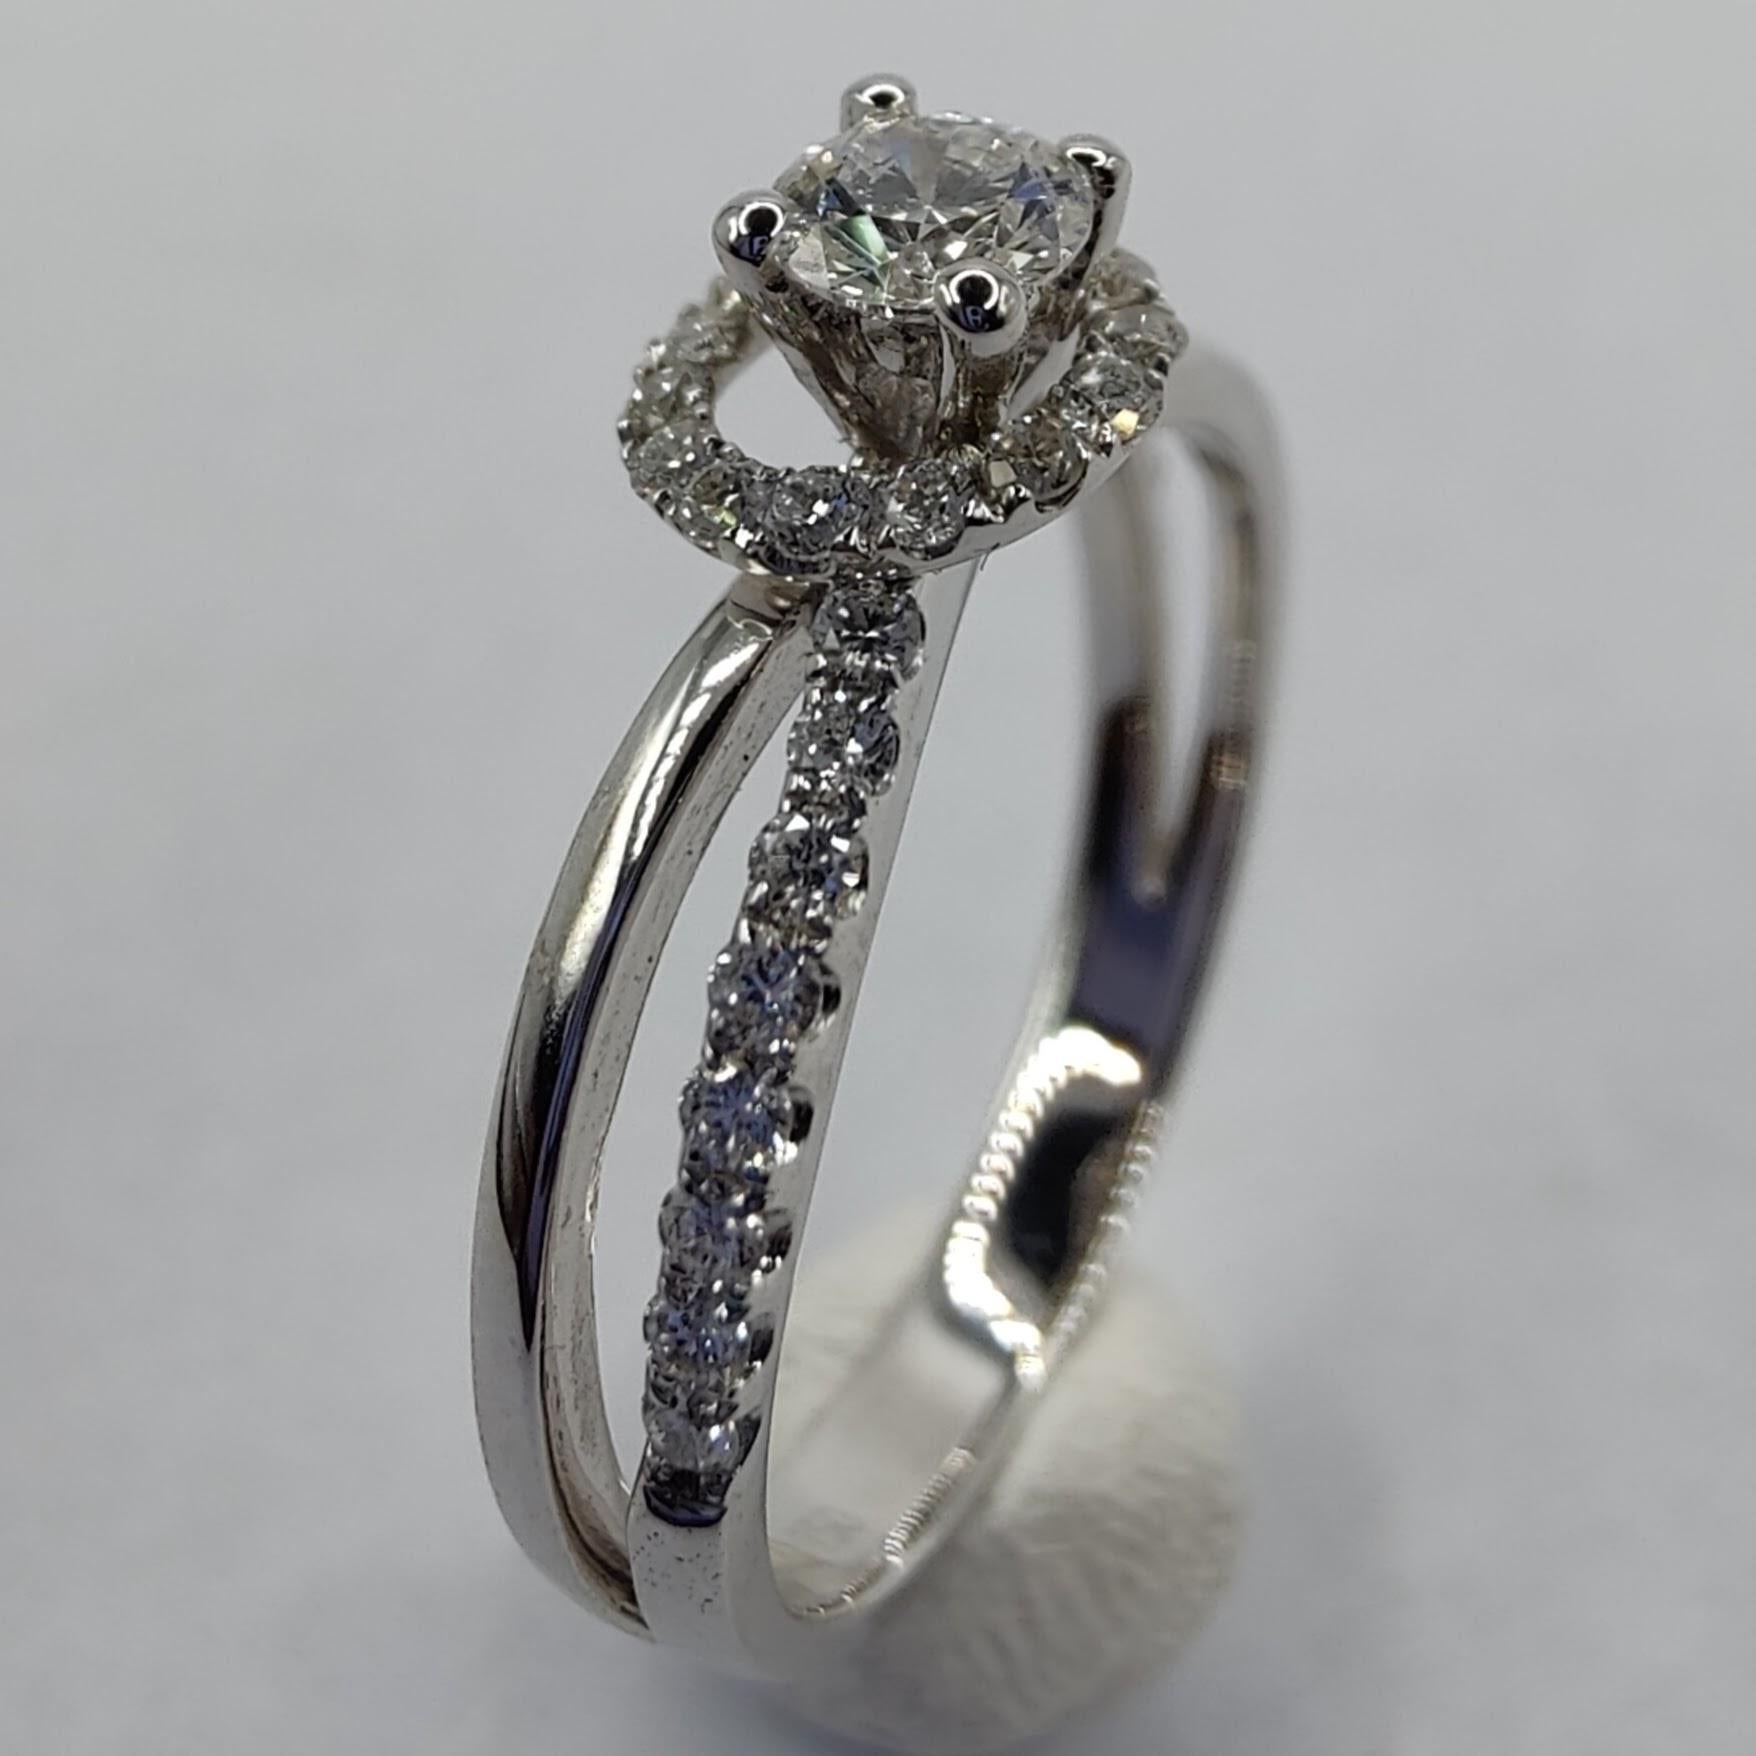 Dieser atemberaubende Hula-Hoop-Diamantring ist die perfekte Wahl für einen Verlobungsring oder ein Accessoire für einen besonderen Anlass. Der Ring ist aus hochwertigem 18-karätigem Weißgold und Diamanten gefertigt und verfügt über einen